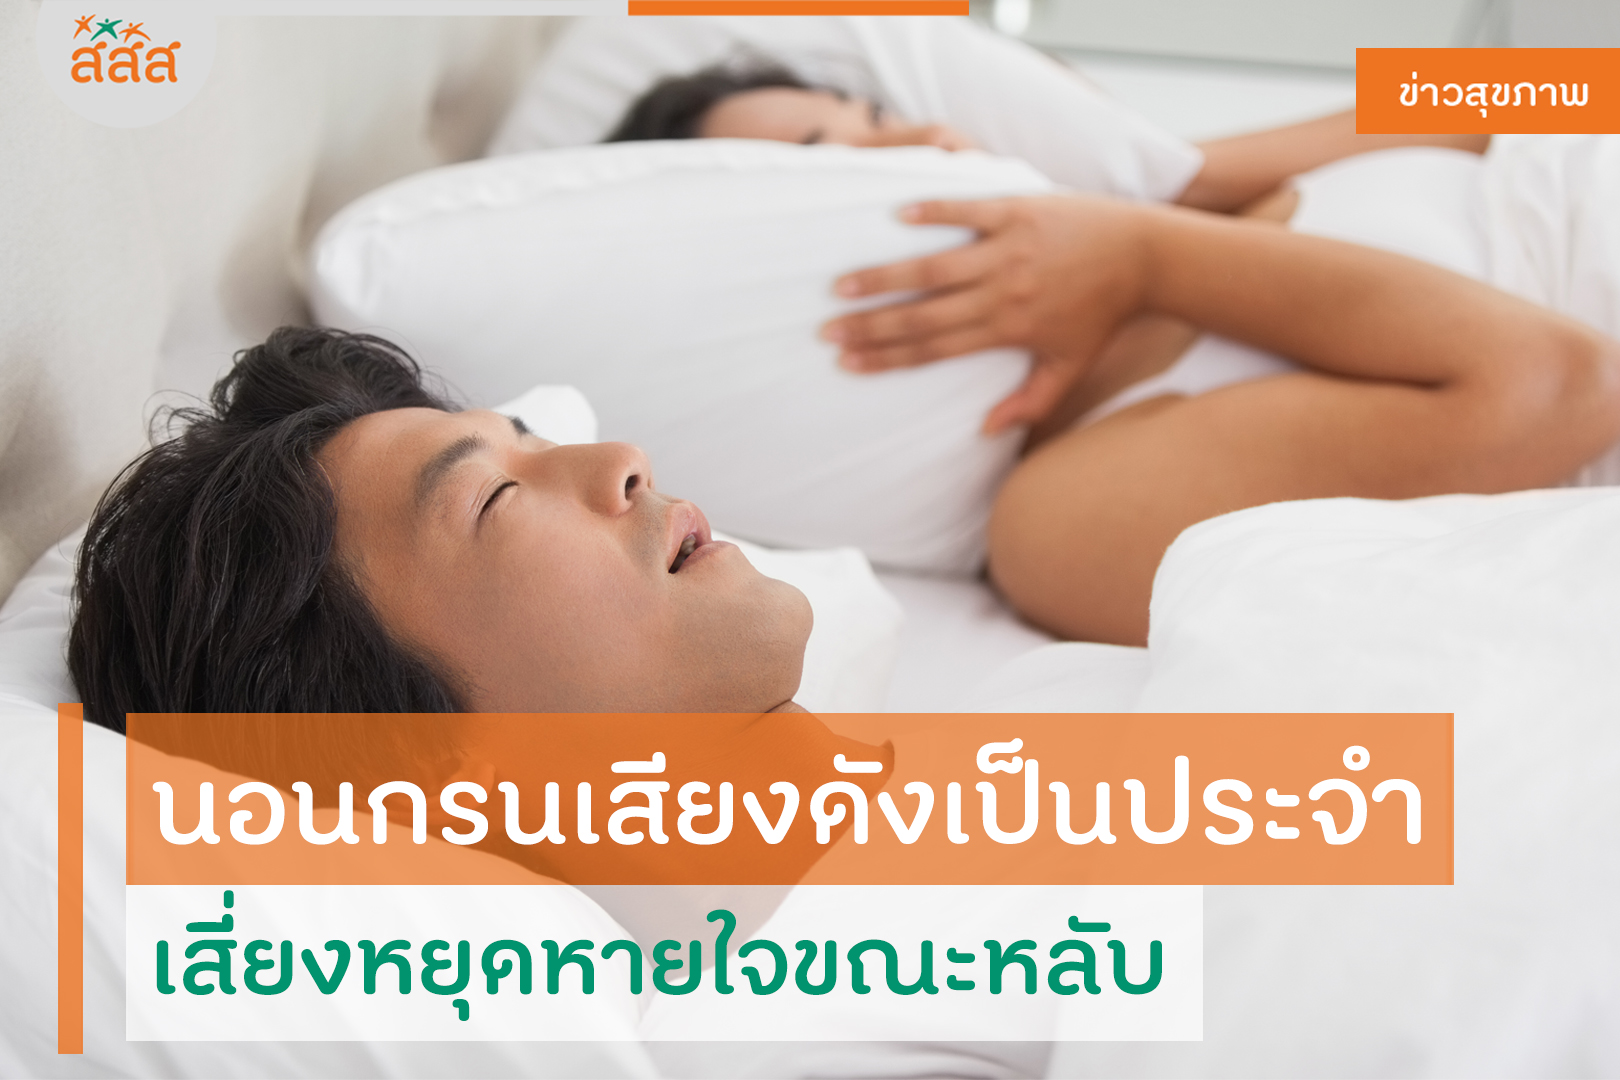 นอนกรนเสียงดังเป็นประจำ เสี่ยงหยุดหายใจขณะหลับ thaihealth